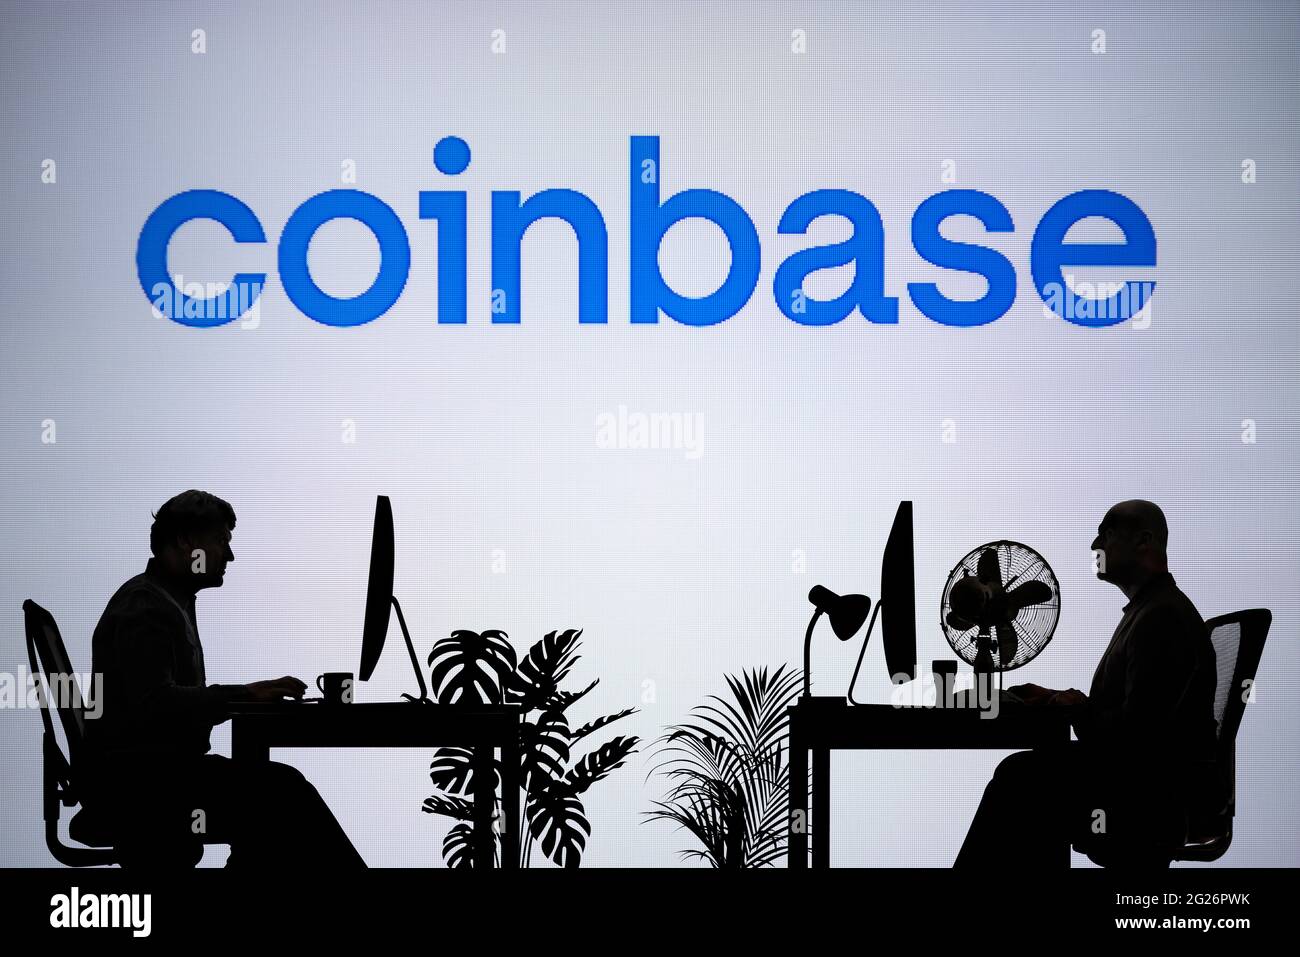 Le logo Coinbase est visible sur un écran LED en arrière-plan tandis que deux personnes silhouetées travaillent dans un environnement de bureau (usage éditorial uniquement) Banque D'Images